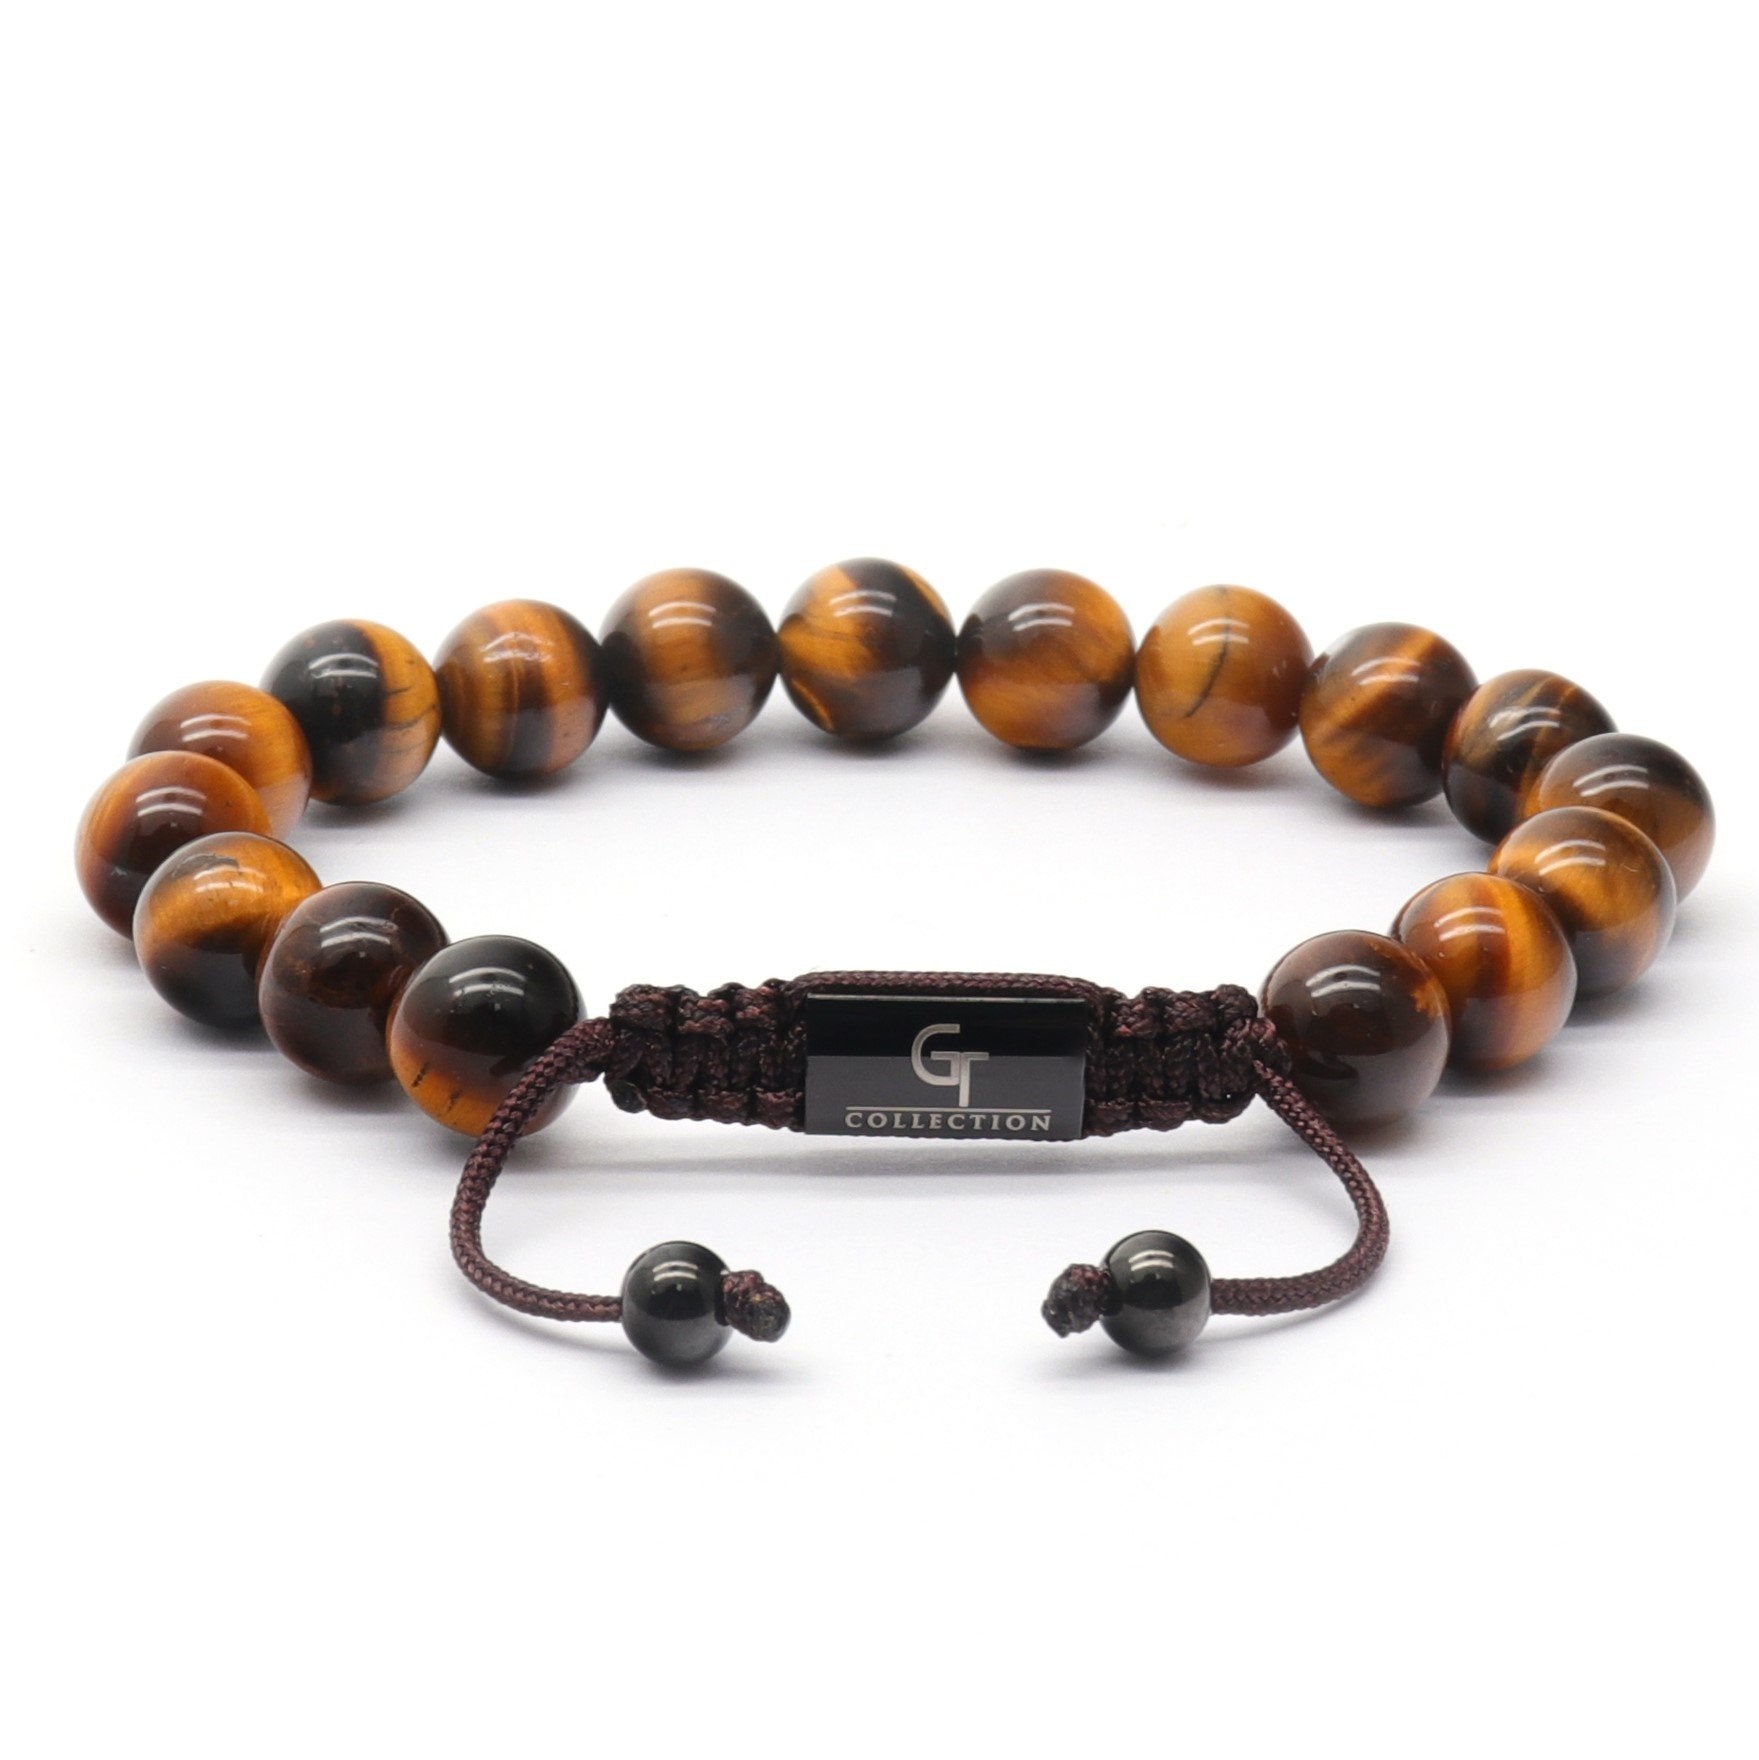 Black leather bracelet with natural tiger eye stones -